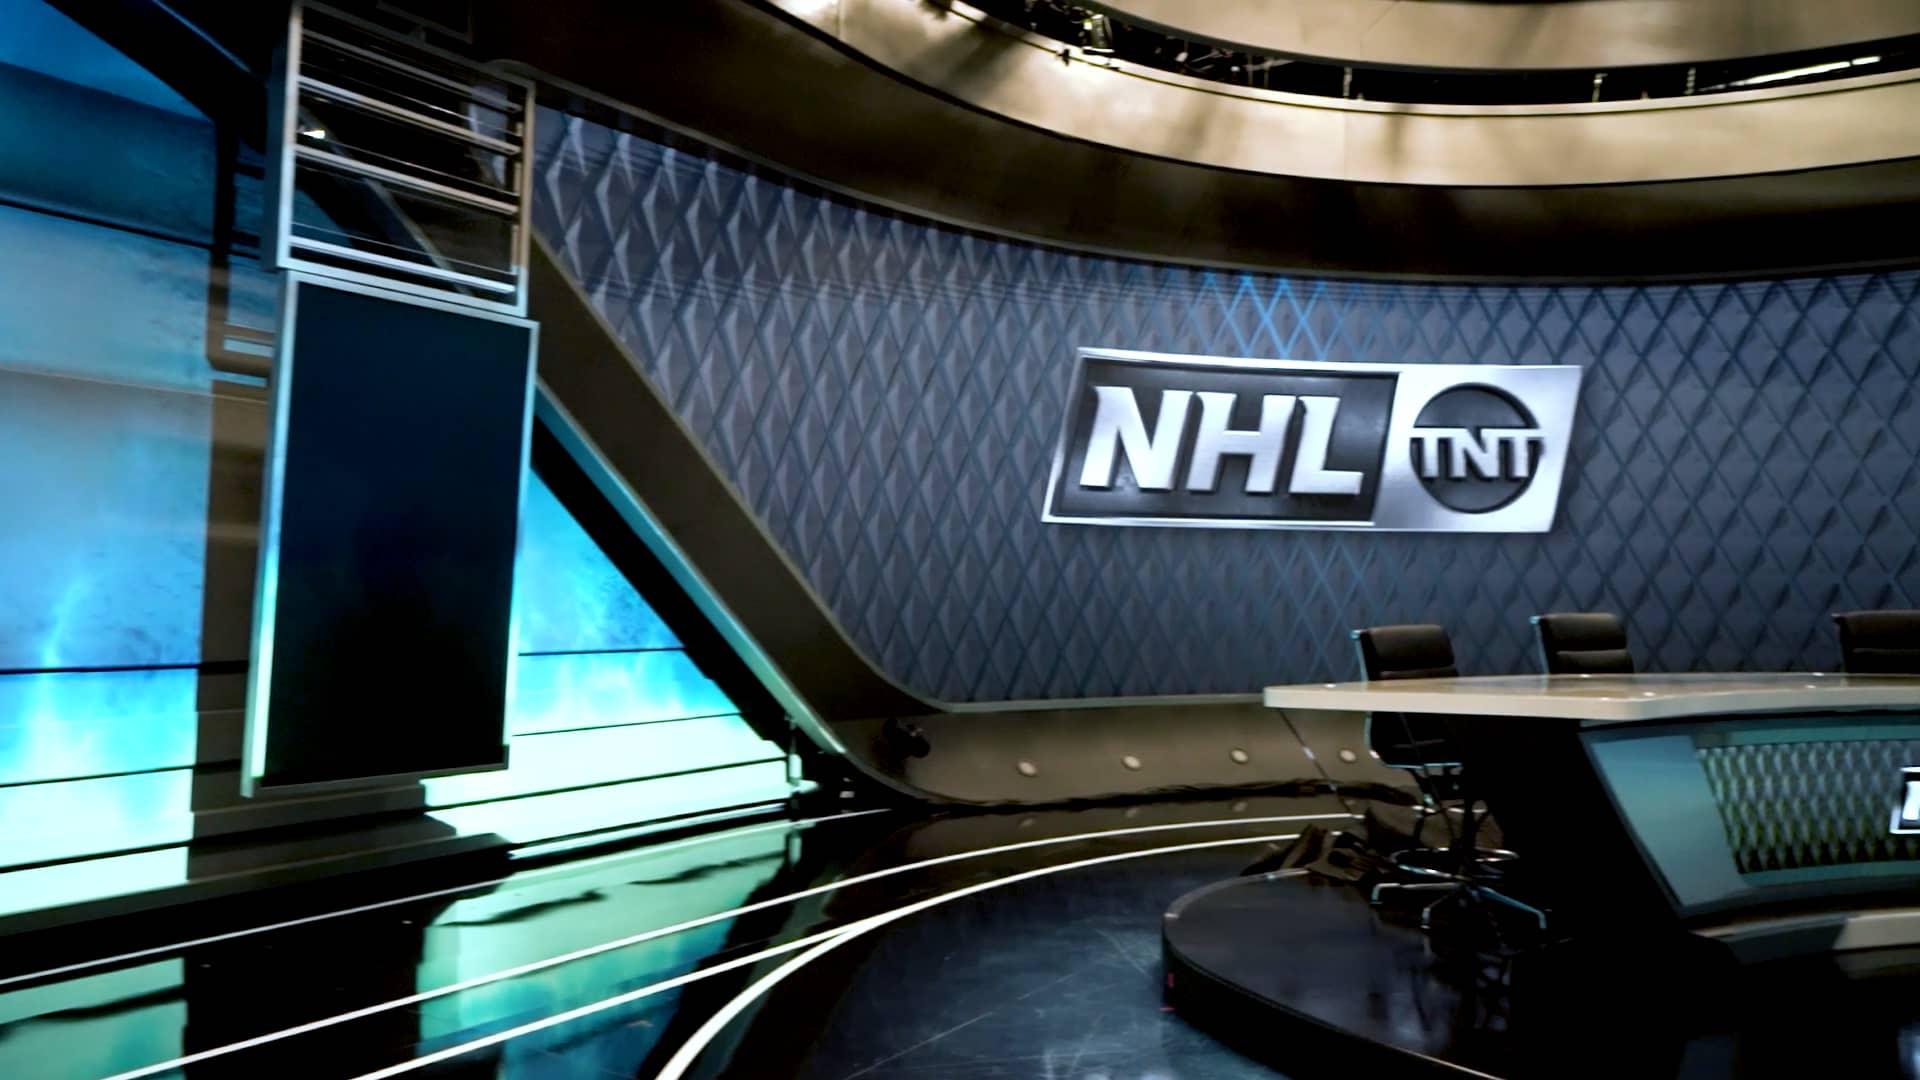 NHL on TNT at Turner Studios on Vimeo